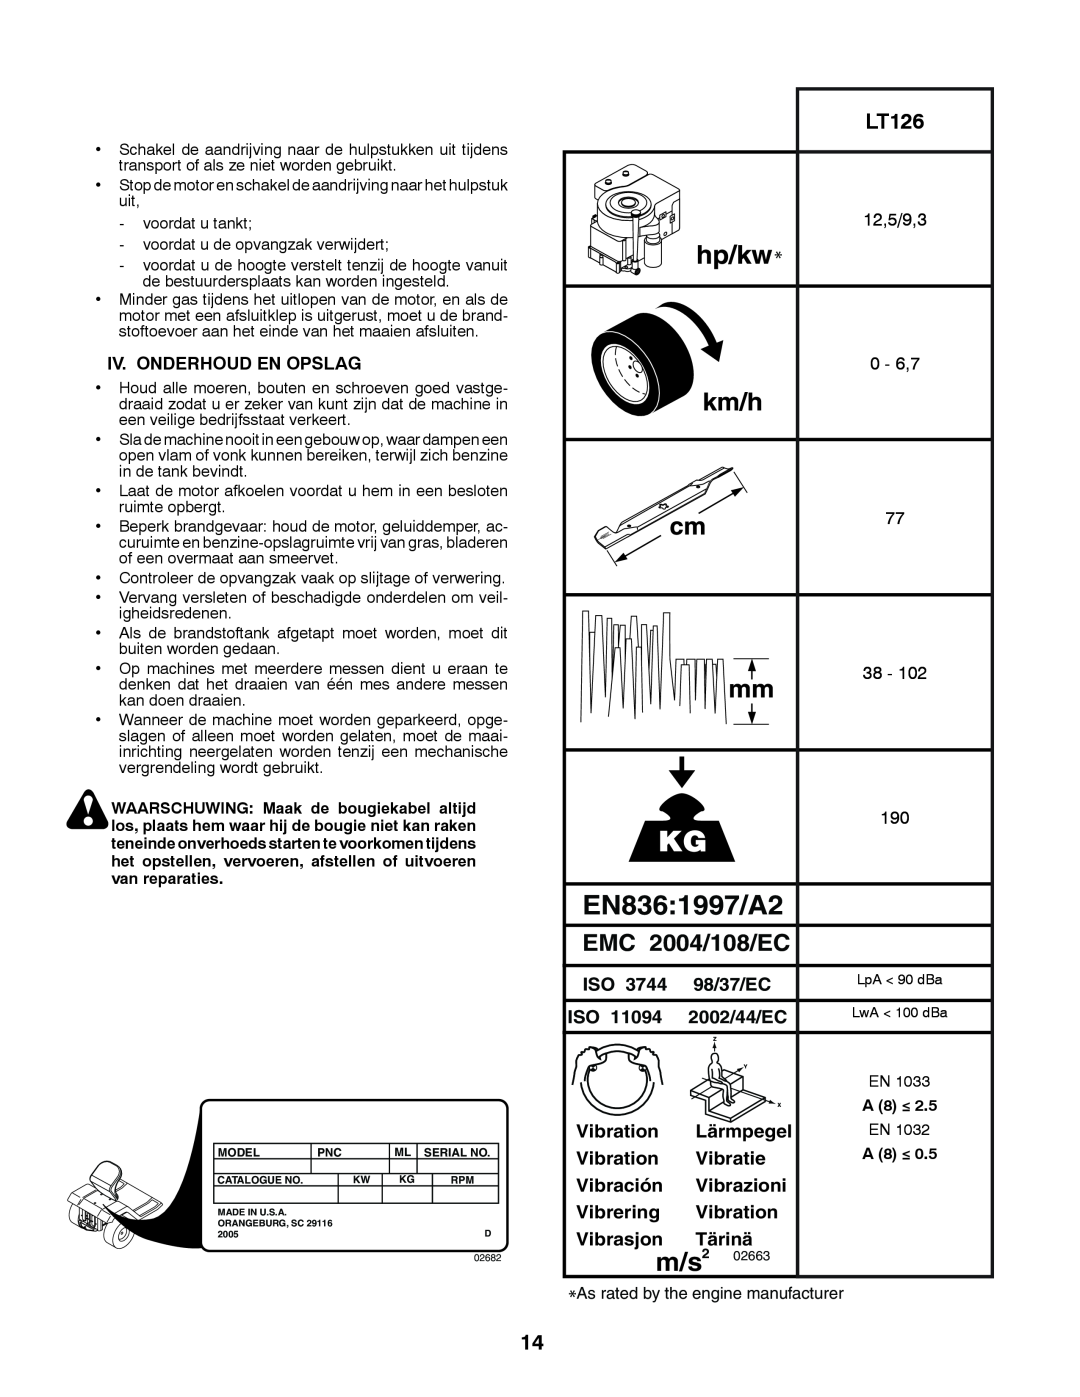 Husqvarna LT126 instruction manual EN8361997/A2, m/s2, EMC 2004/108/EC 